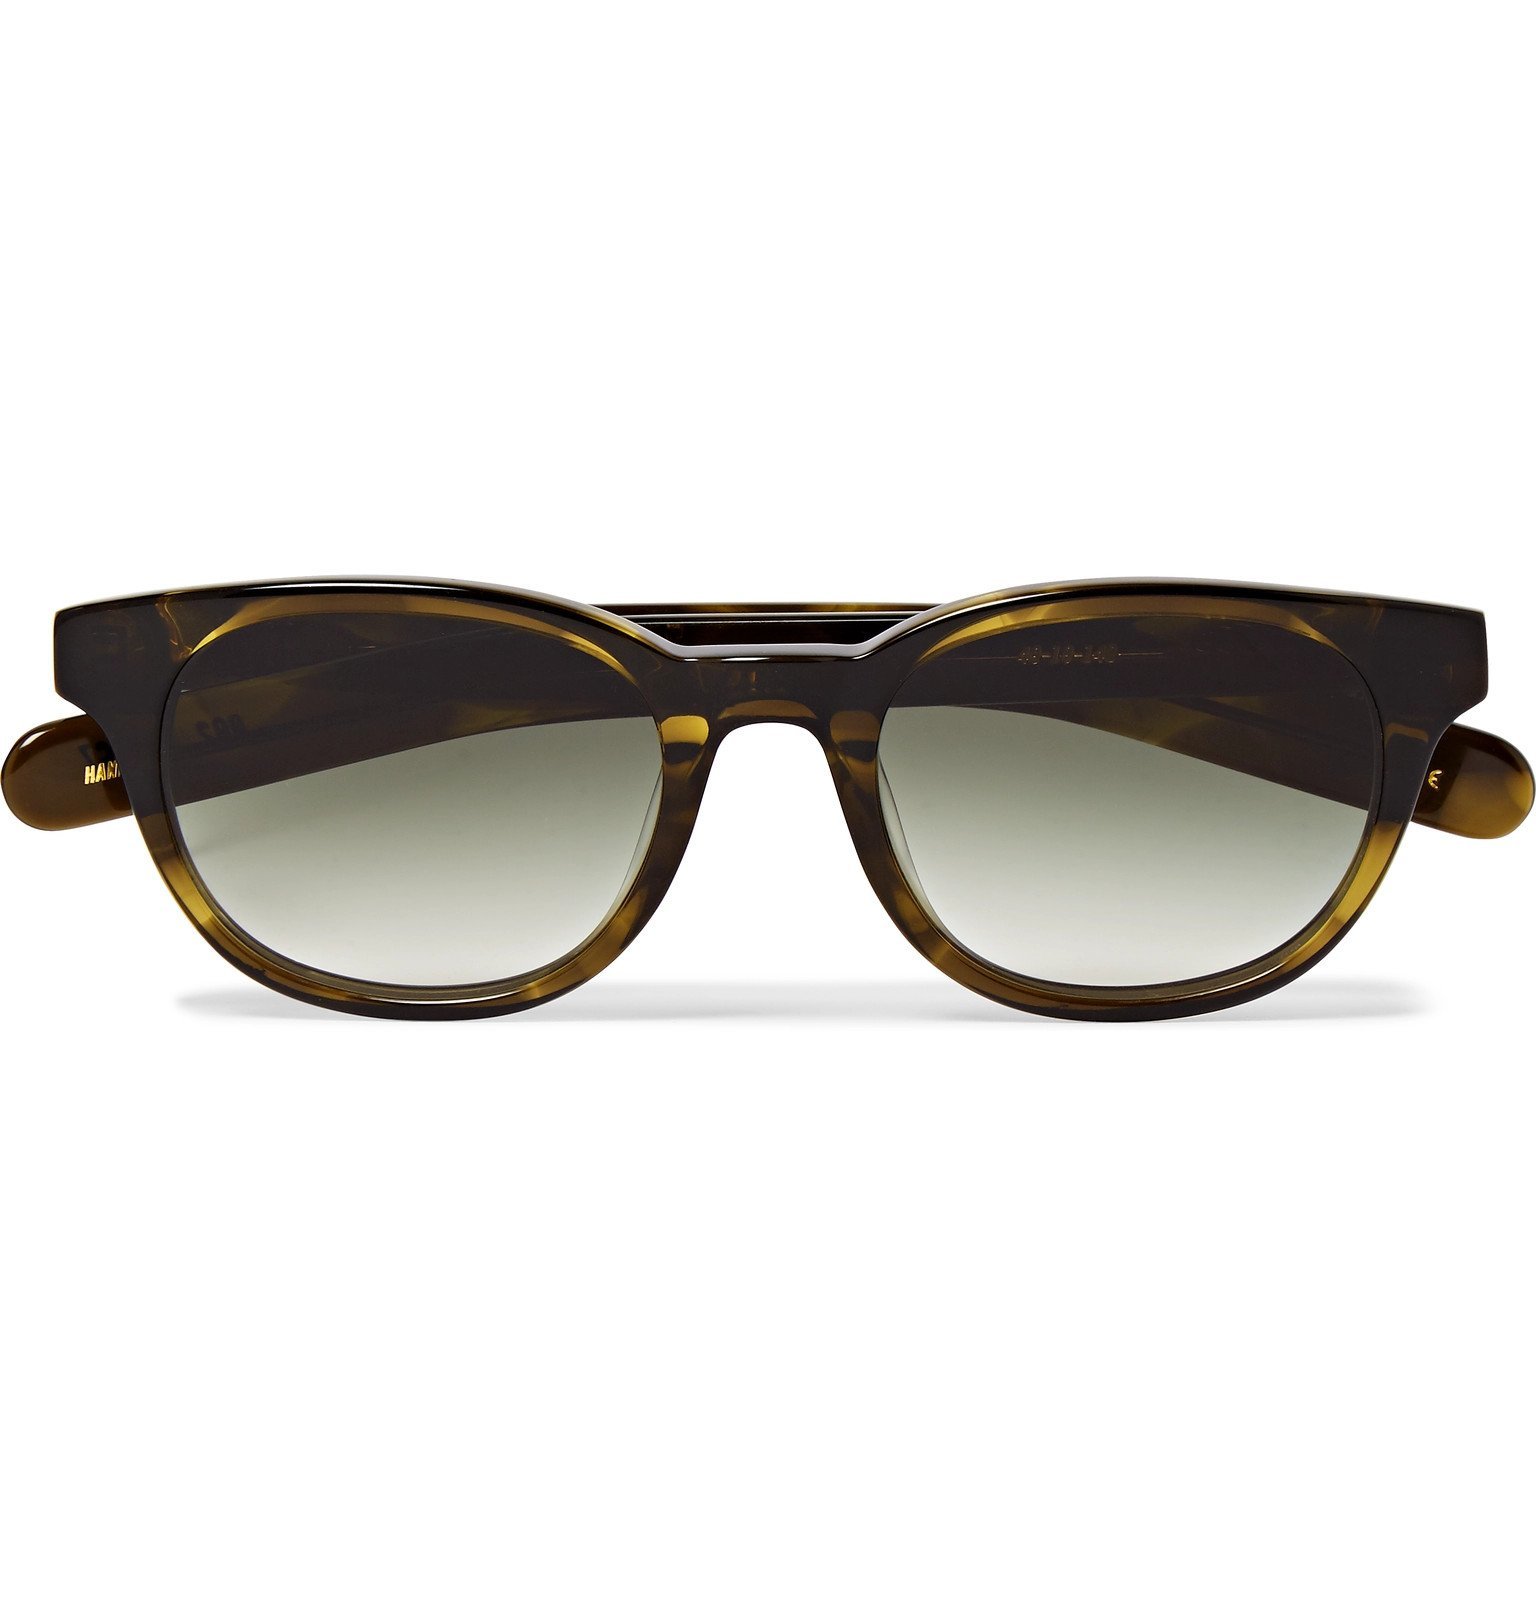 FLATLIST - Logic D-Frame Tortoiseshell Acetate Sunglasses - Green